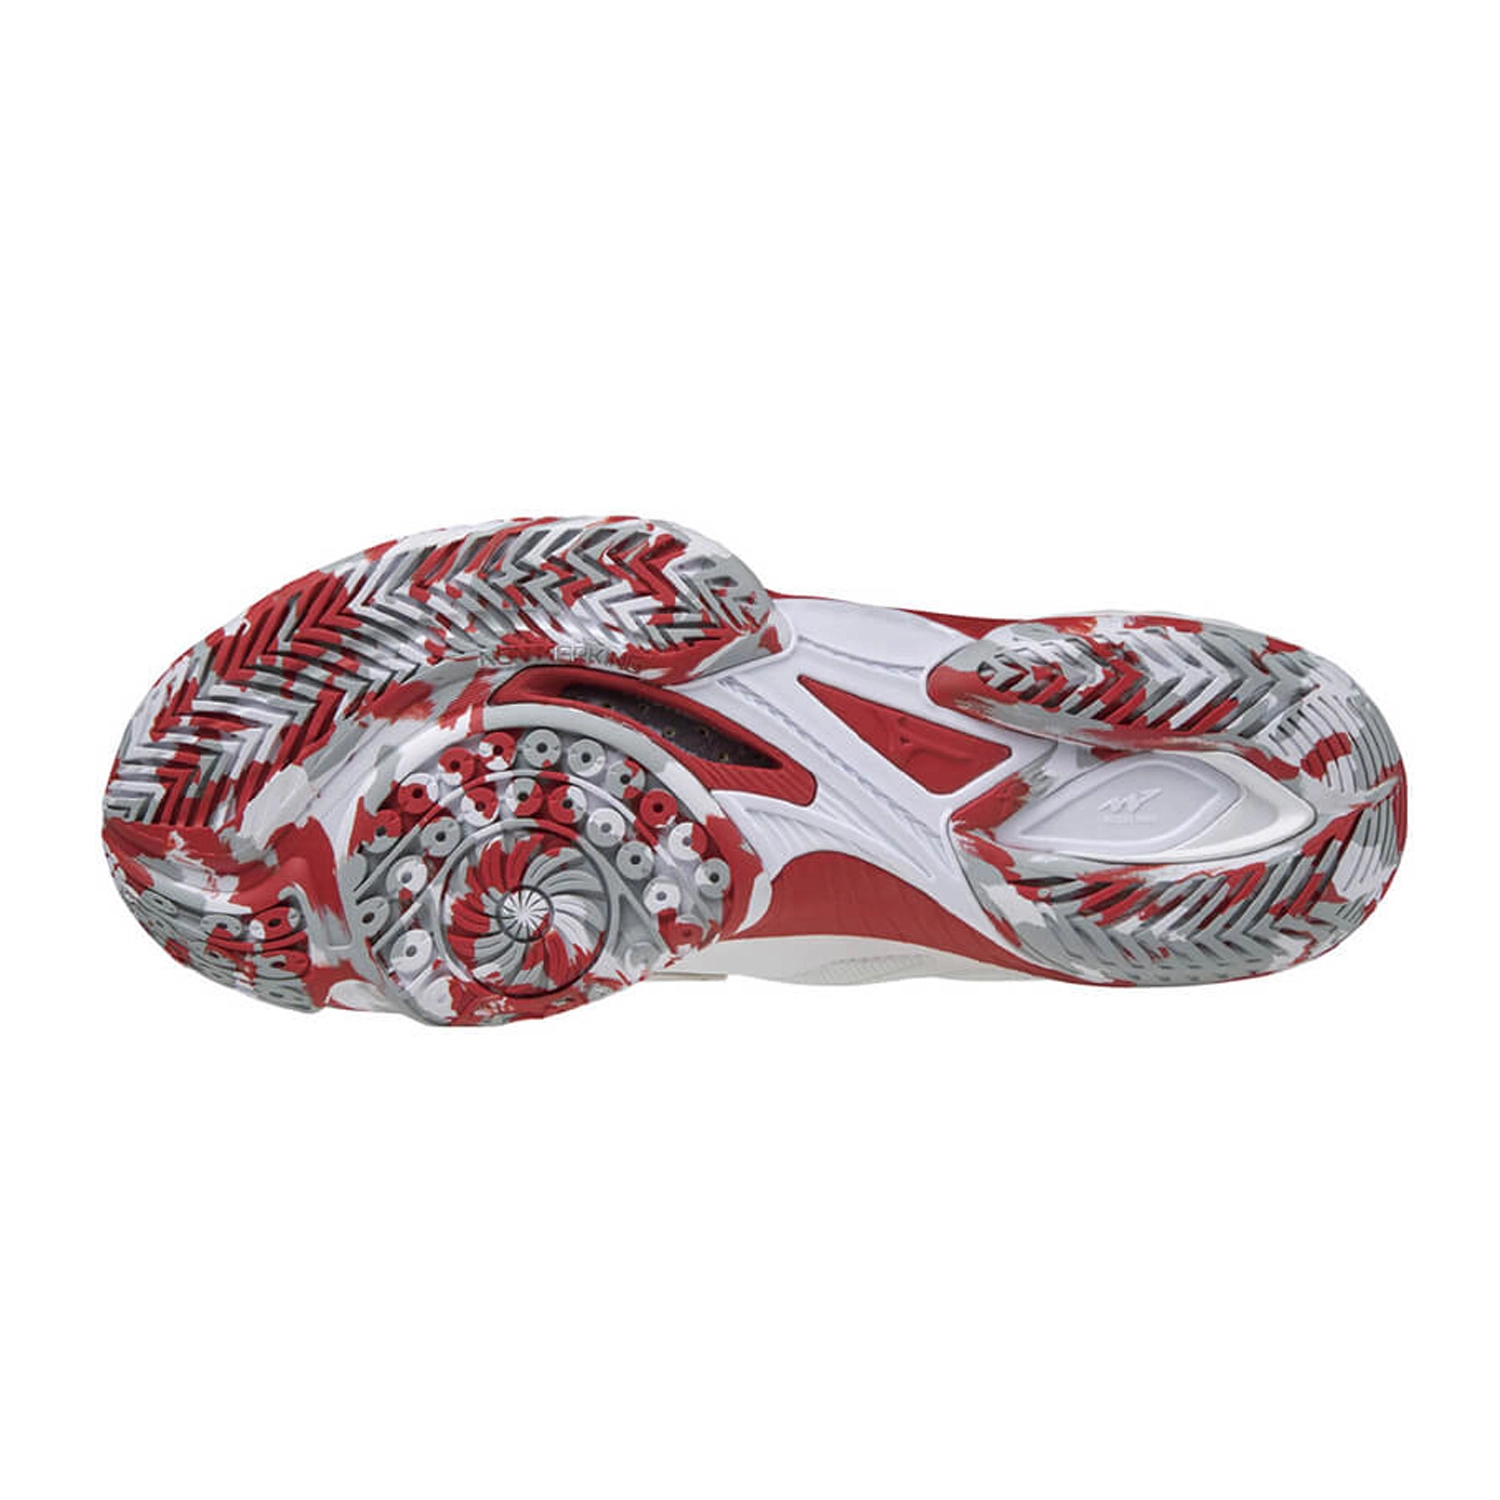 Giày cầu lông cao cấp Mizuno Wave Claw 2 - Trắng Đỏ